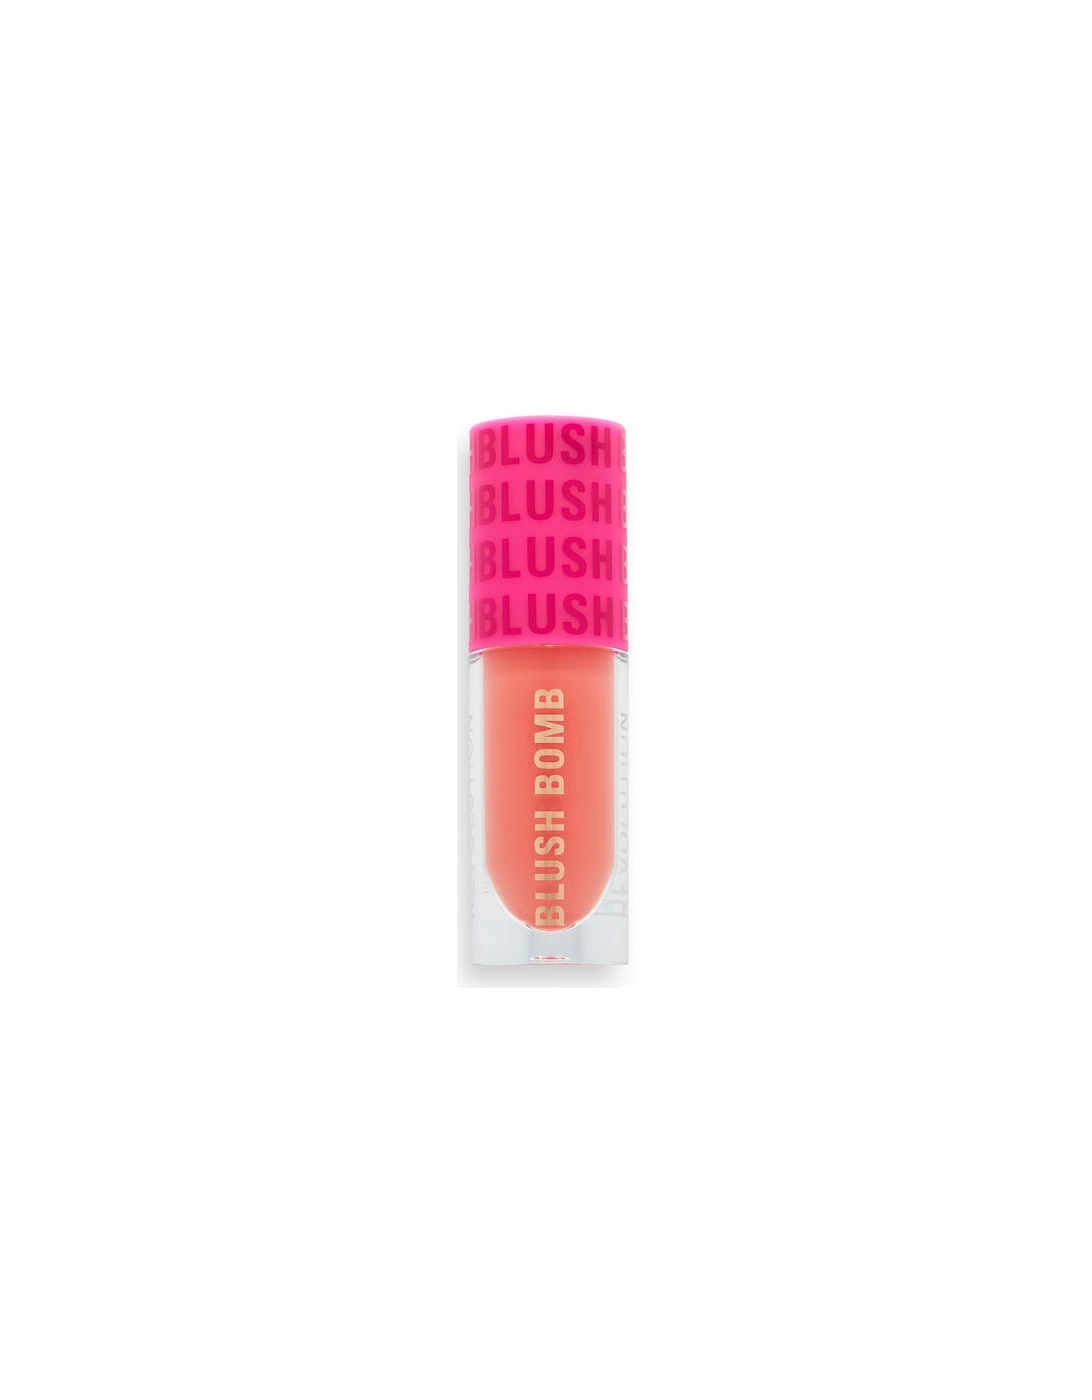 Makeup Blush Bomb Cream Blusher Glam Orange, 2 of 1